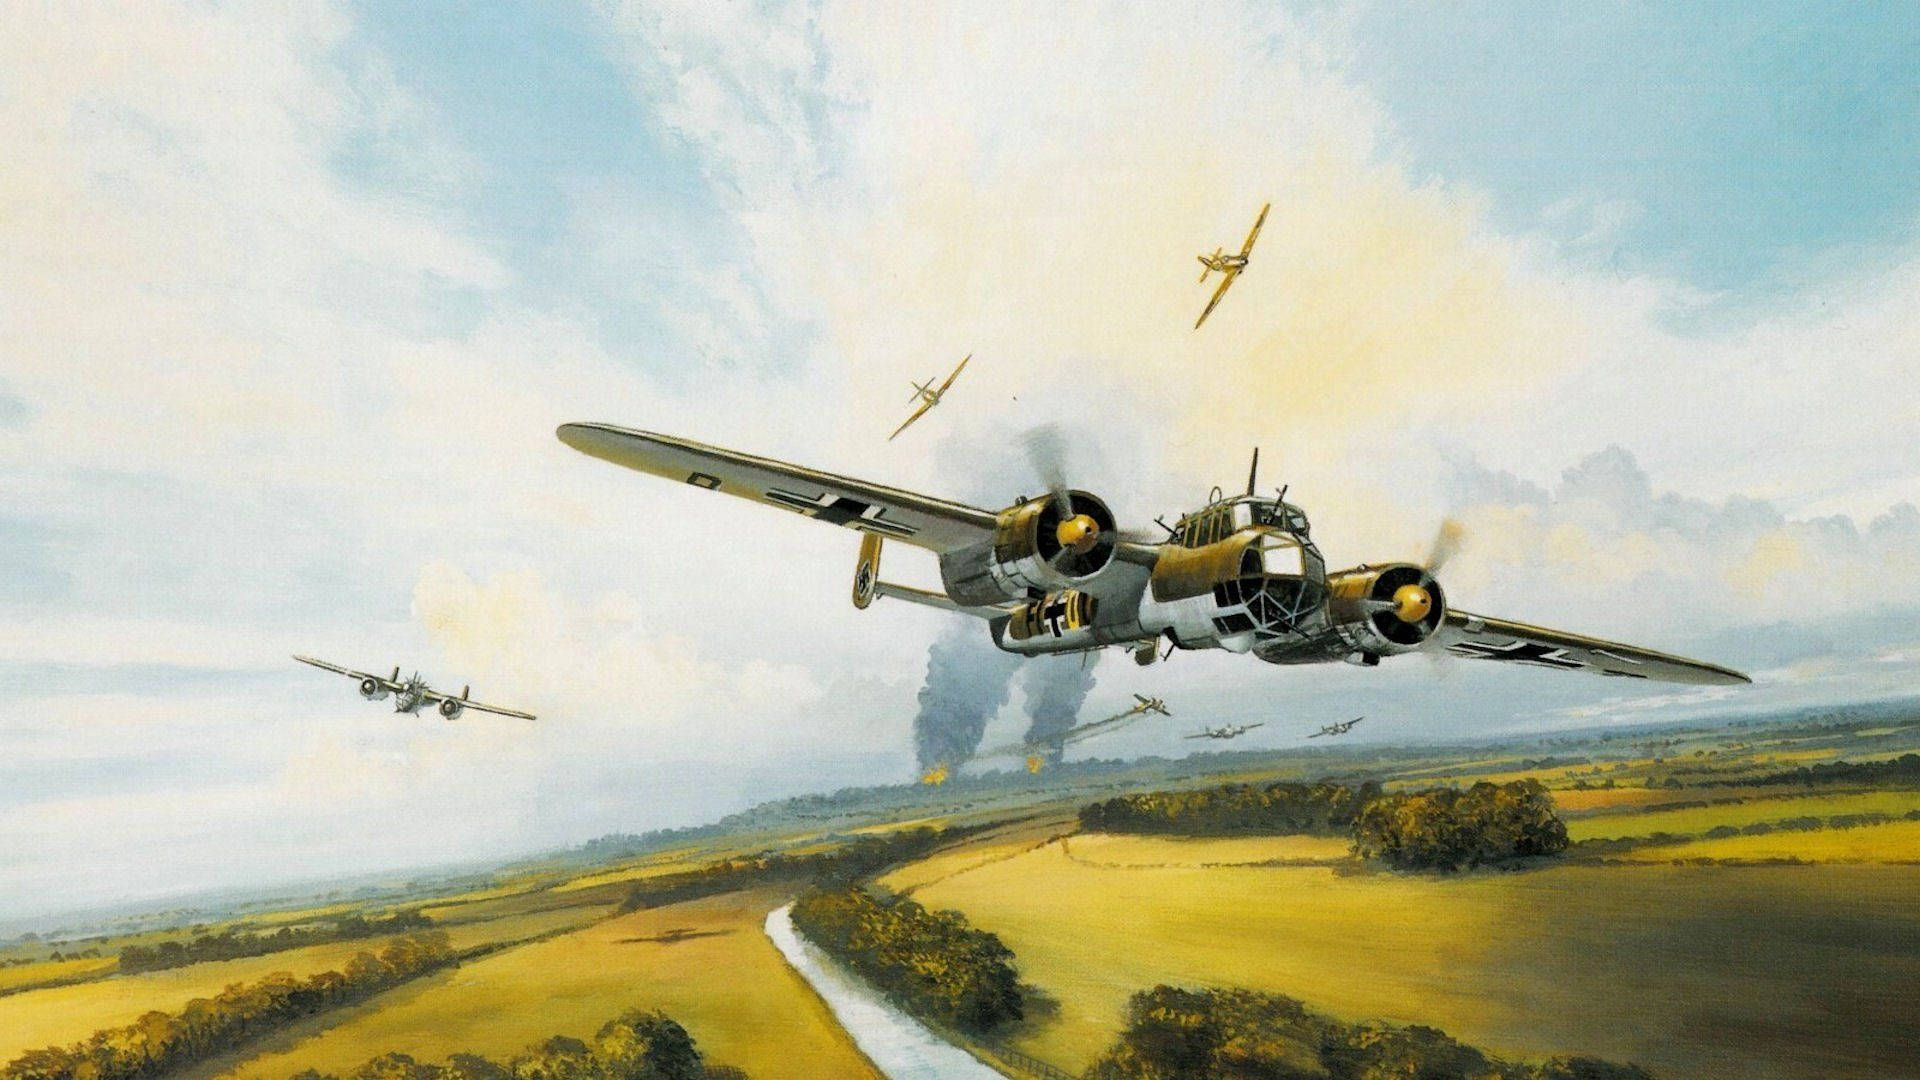 Dornier Do 17 German WW2 Fighters Wallpaper